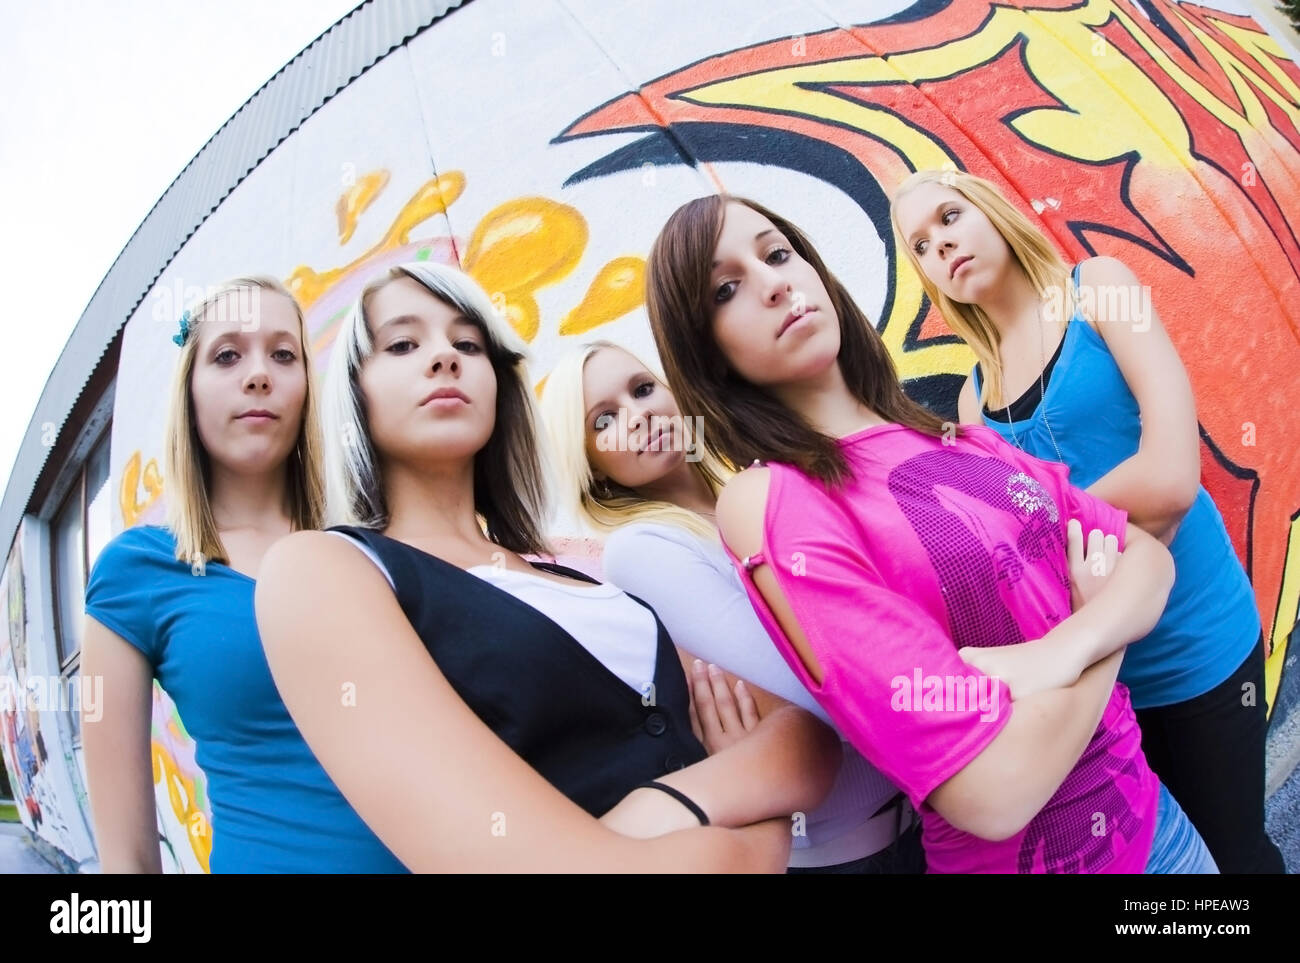 Model Release, Gruppe Jugendlicher näher Vor Graffitiwand - Gruppe von Mädchen vor der Graffitiwand Stockfoto